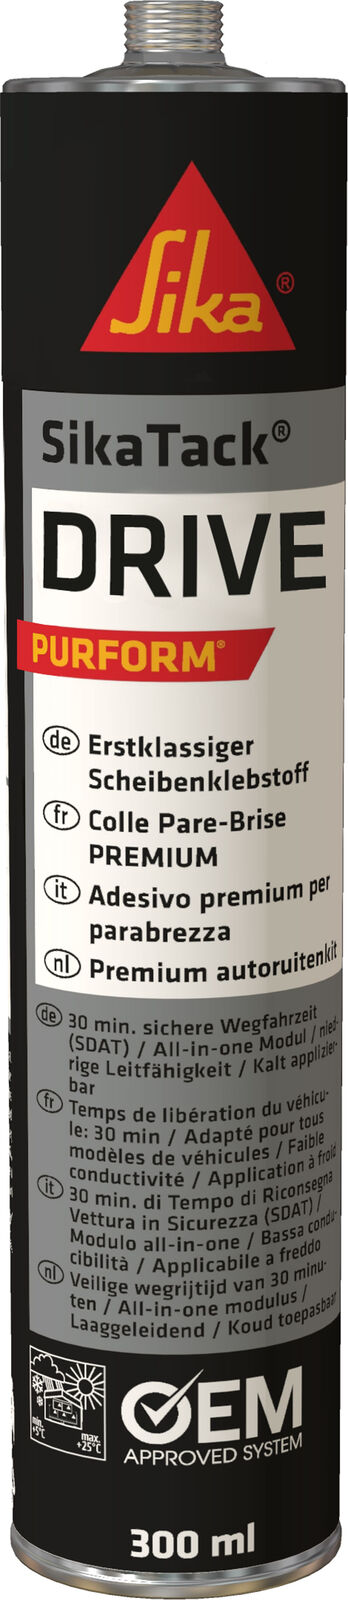 SikaTack Drive PURFORM Premium Scheibenkleber 60 Minuten schwarz 300 ml